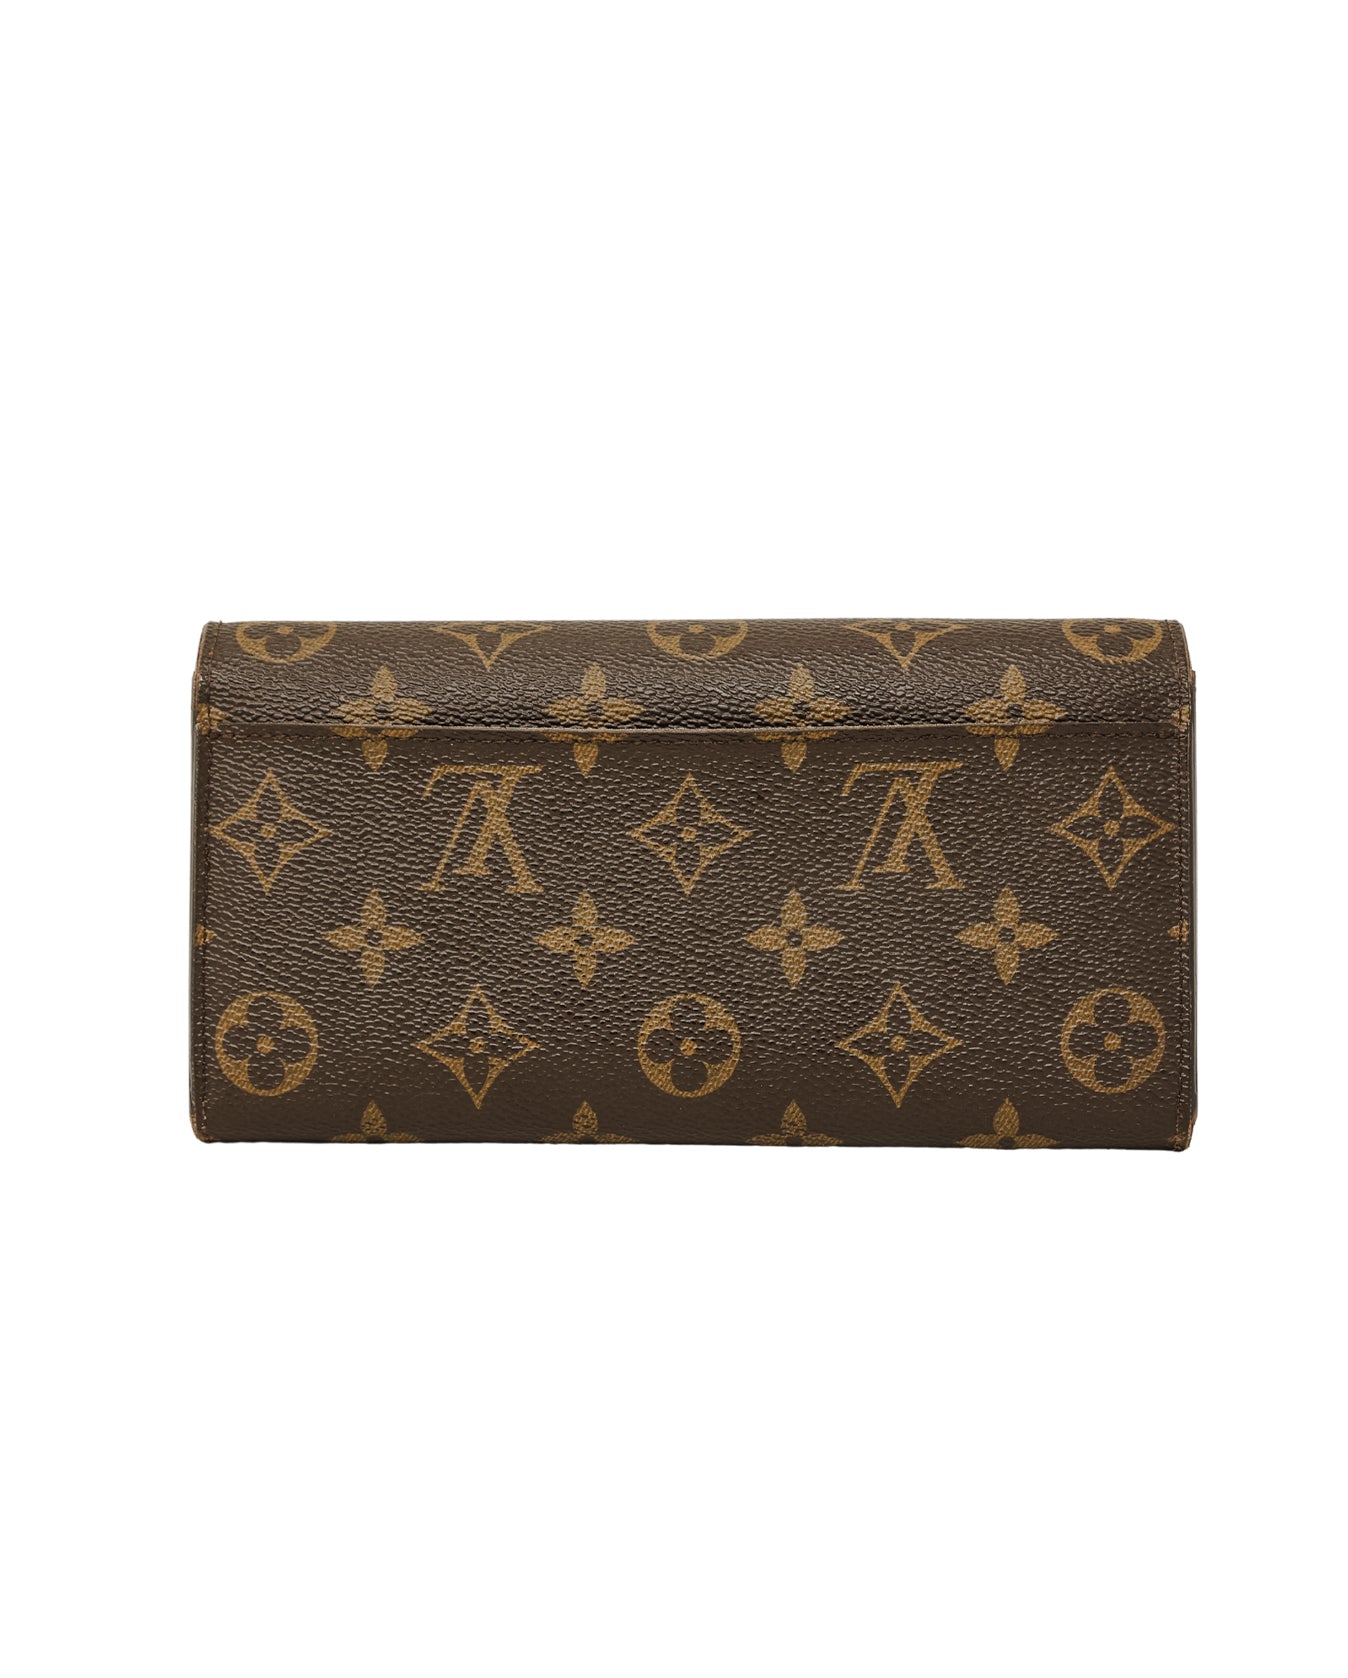 Louis Vuitton, Bags, Louis Vuitton Monogram Sarah Wallet Long Authentic Lv  Woc Crossbody Chain